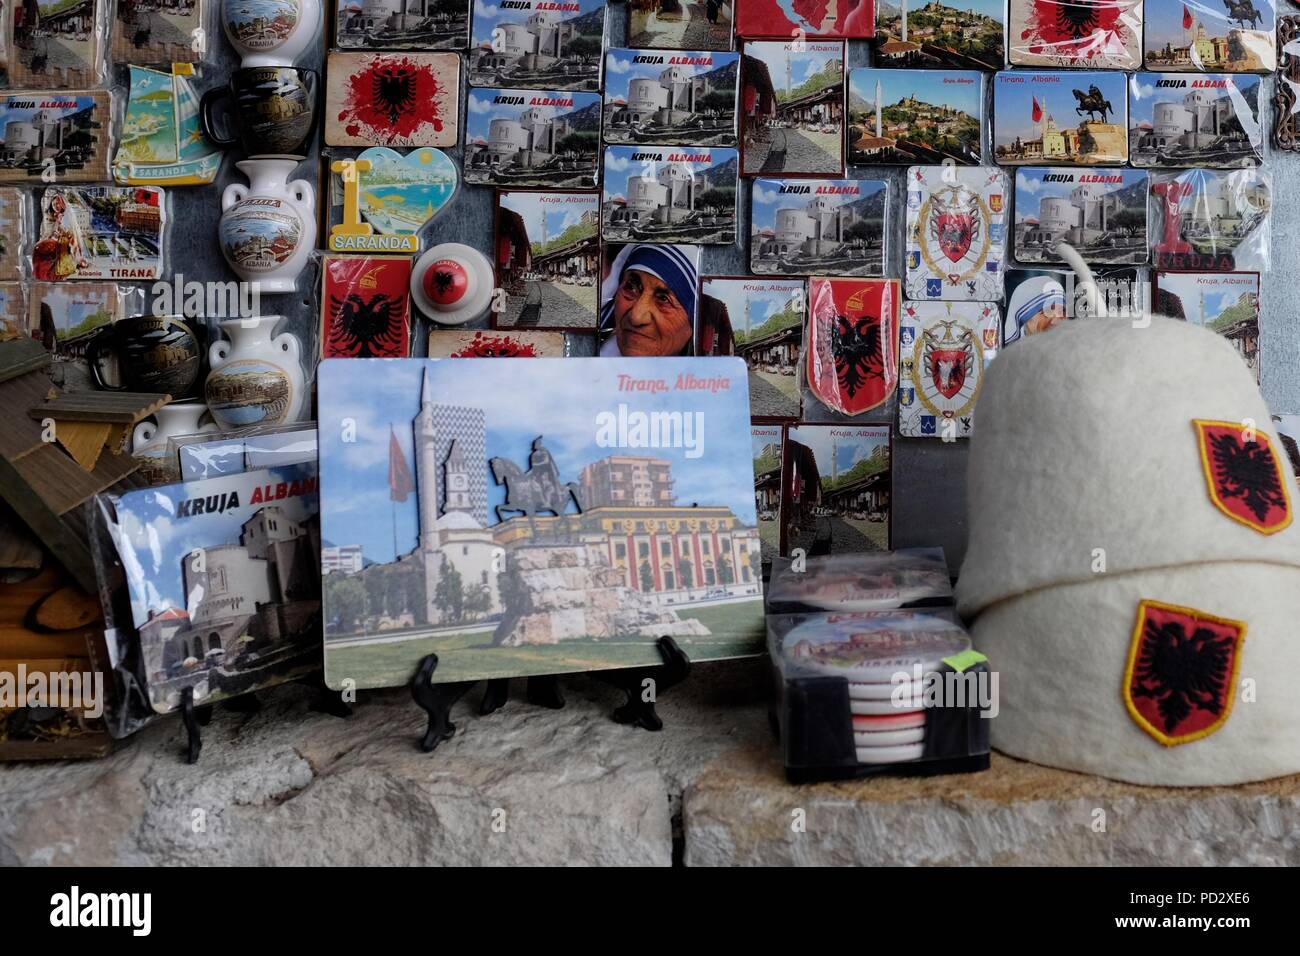 Nahaufnahme der Anzeige von Souvenirs in Albanien mit traditionellen Hüte, Mutter Teresa Kühlschrank Magnete und zweiköpfigen Adler Flagge Stockfoto